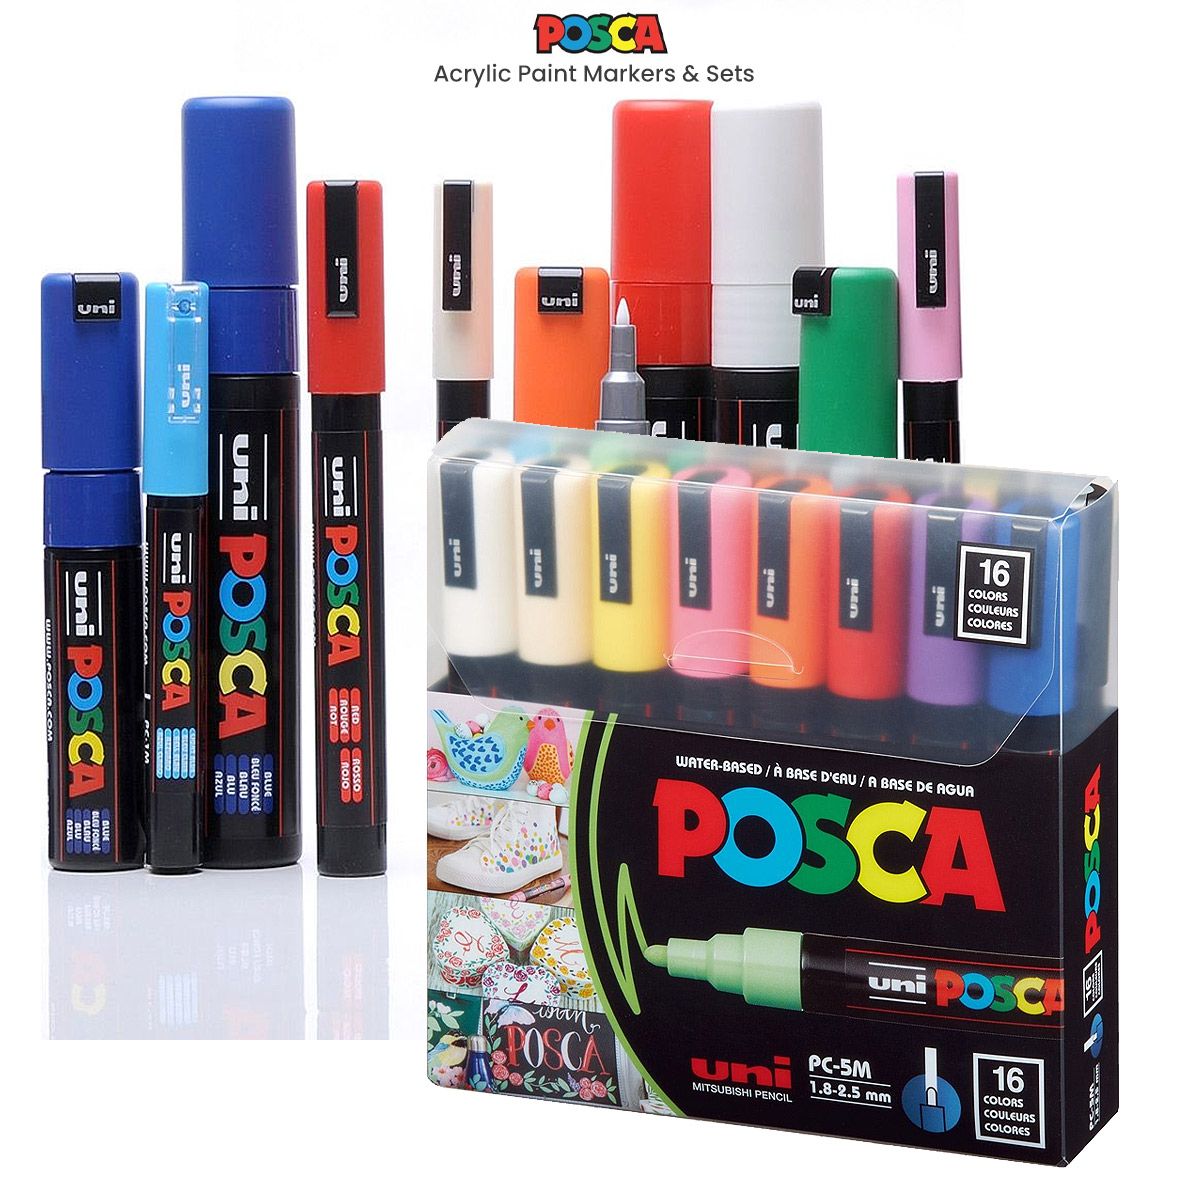 https://www.jerrysartarama.com/media/catalog/product/cache/ecb49a32eeb5603594b082bd5fe65733/p/o/posca-markers-acrylic-markers-sets.jpg